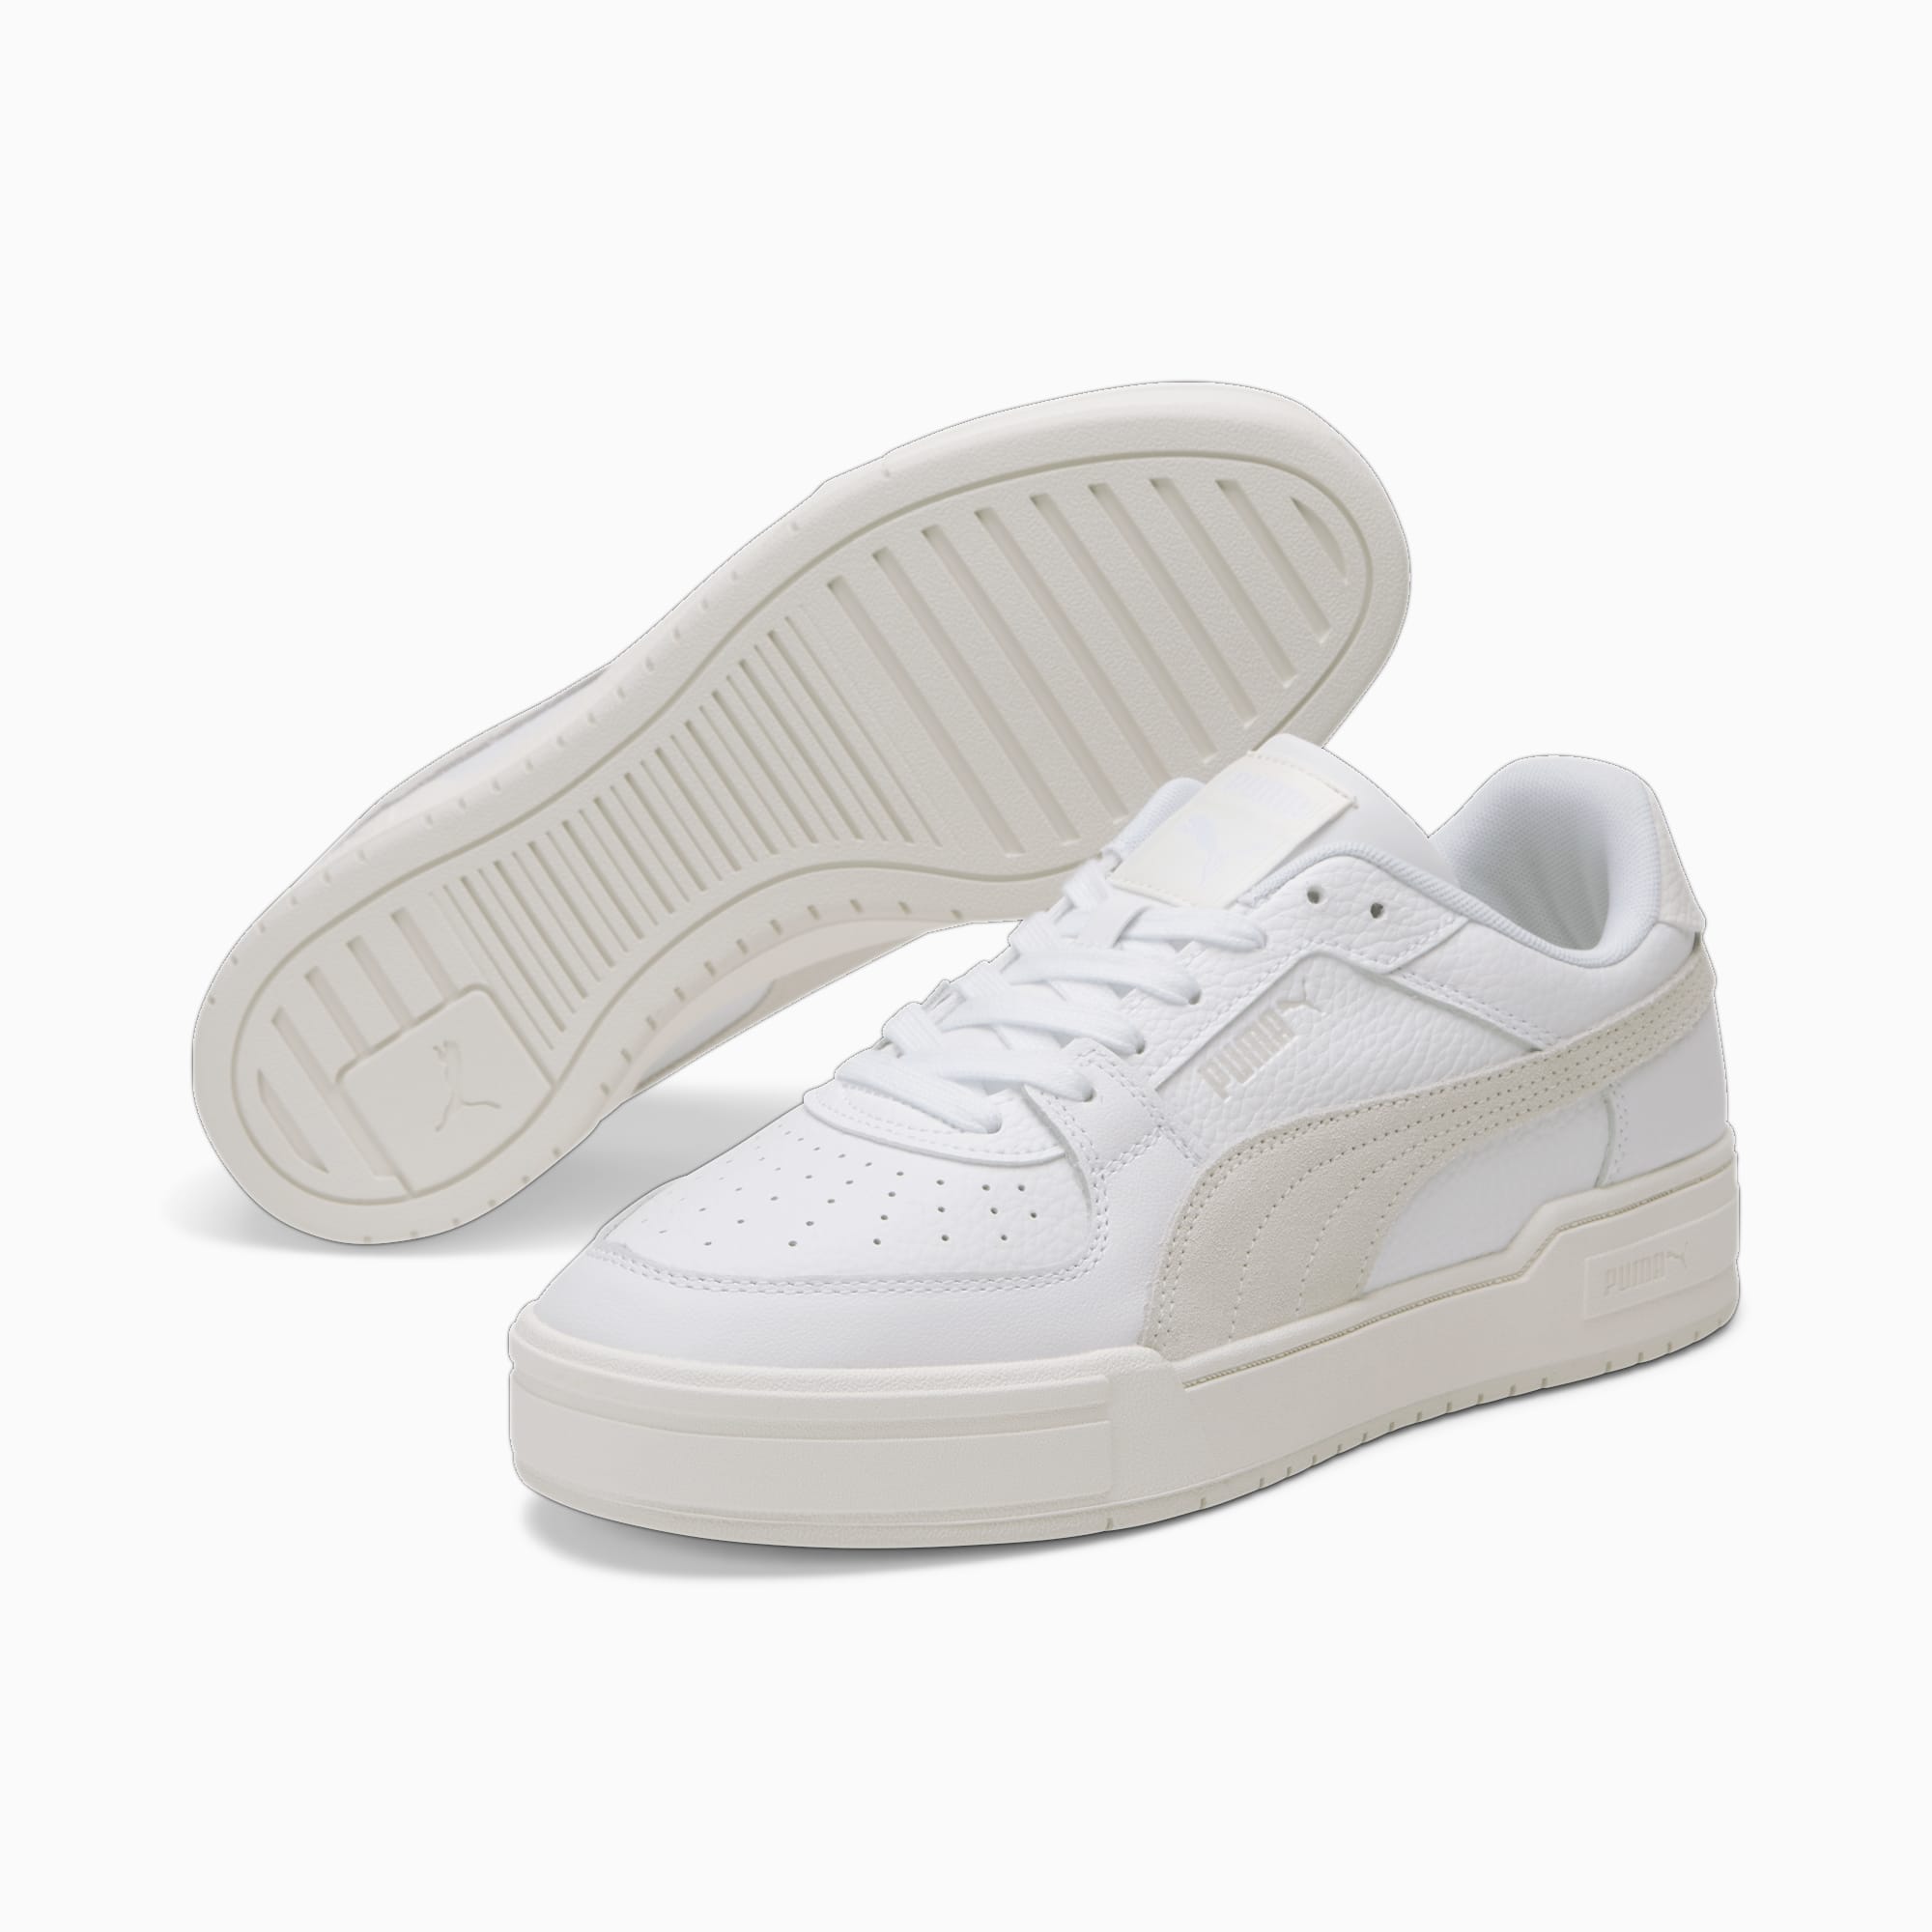 PUMA CA Pro OW Sneakers Schuhe, Weiß/Grau, Größe: 35.5, Schuhe